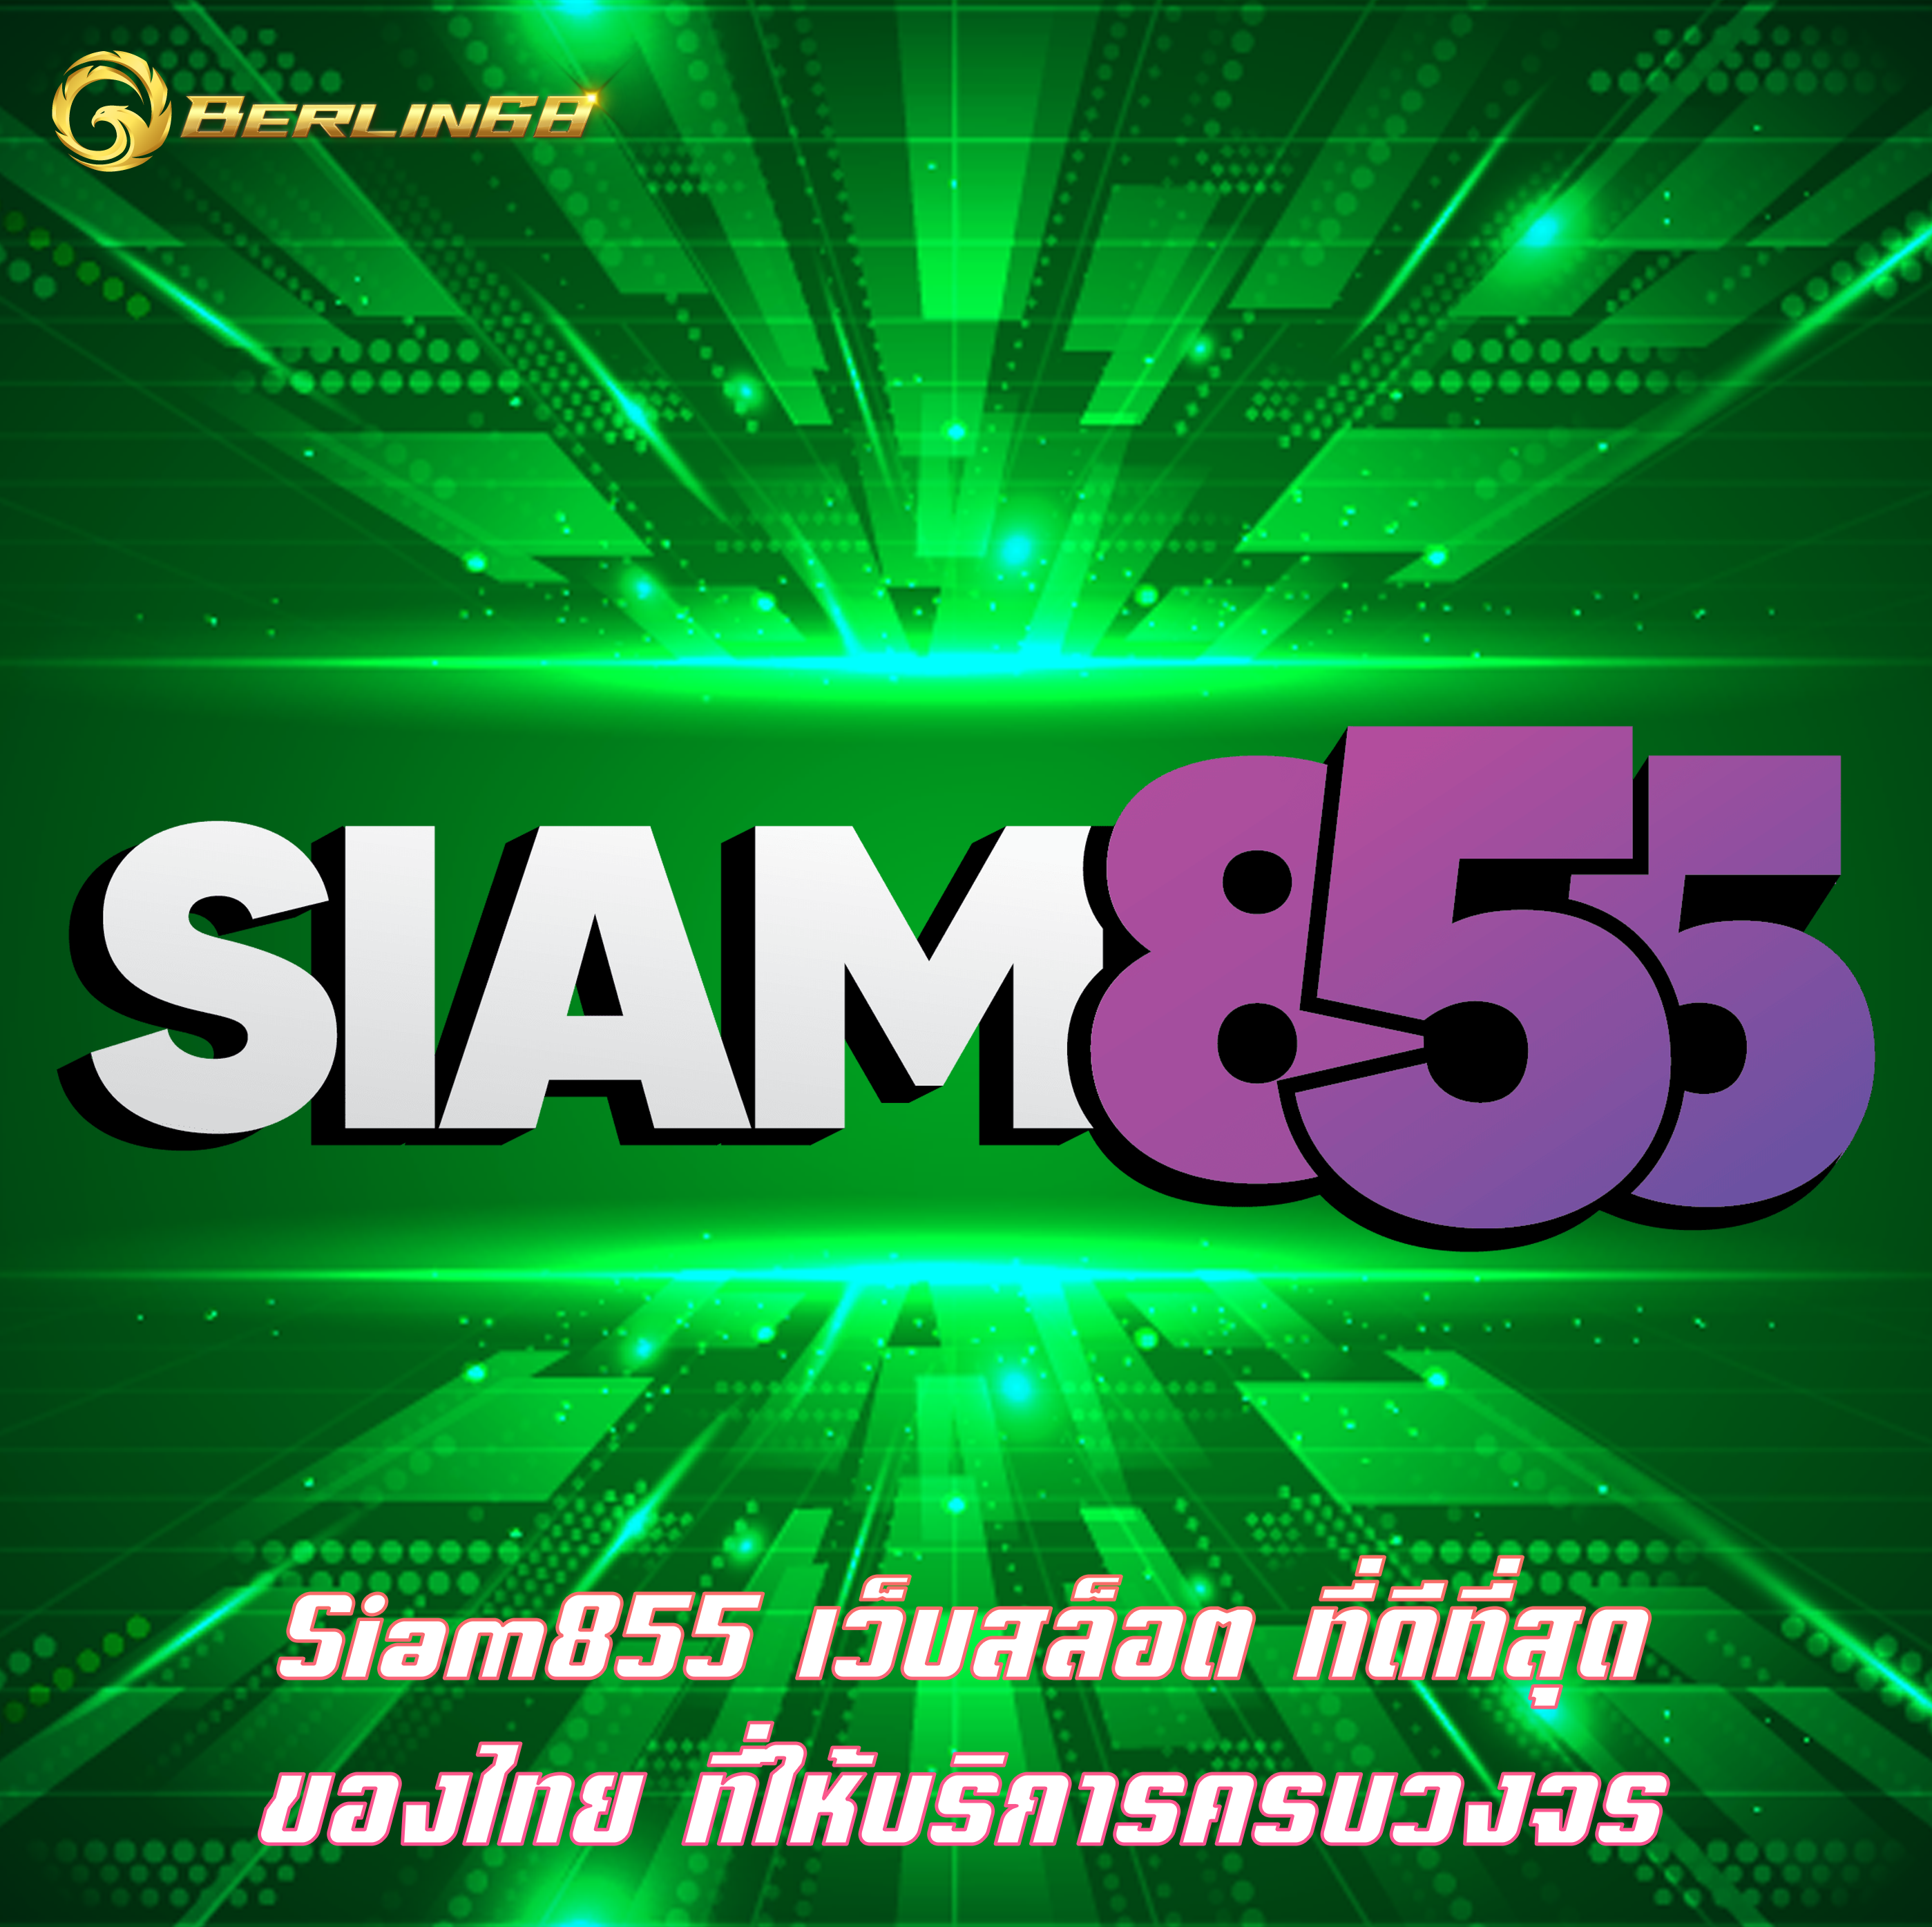 Siam855 เว็บสล็อต ที่ดีที่สุดของไทย ที่ให้บริการครบวงจร